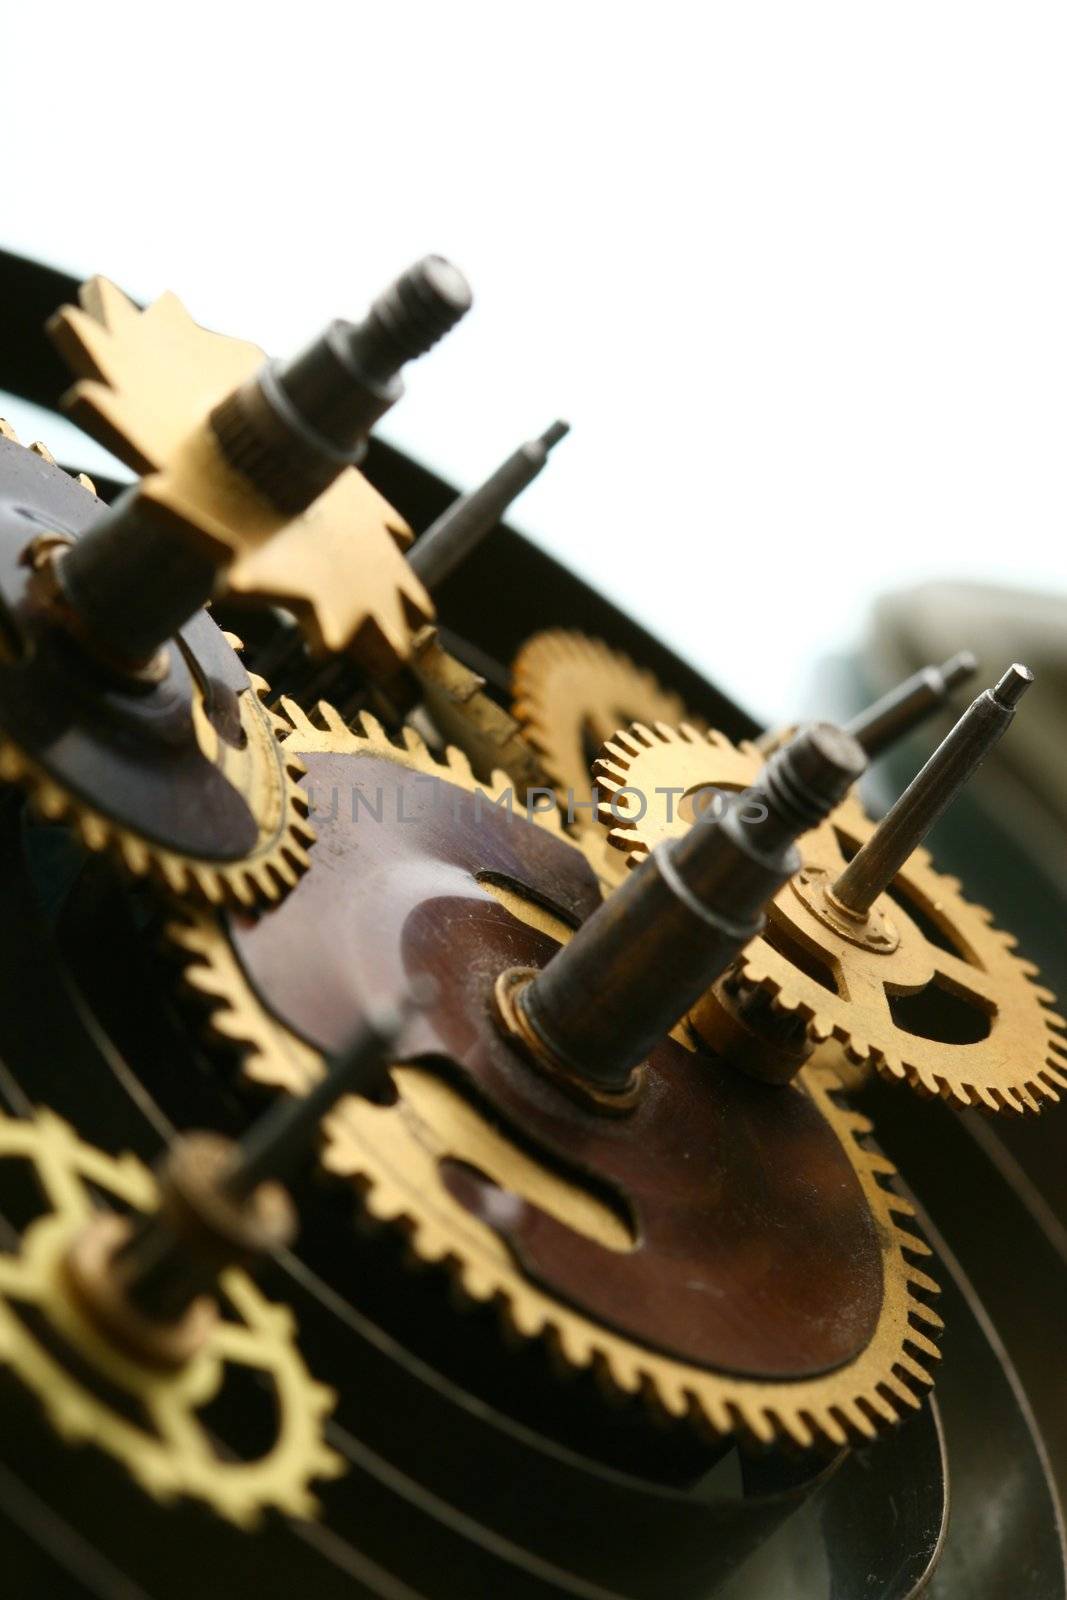 mechanical clock gear macro close up